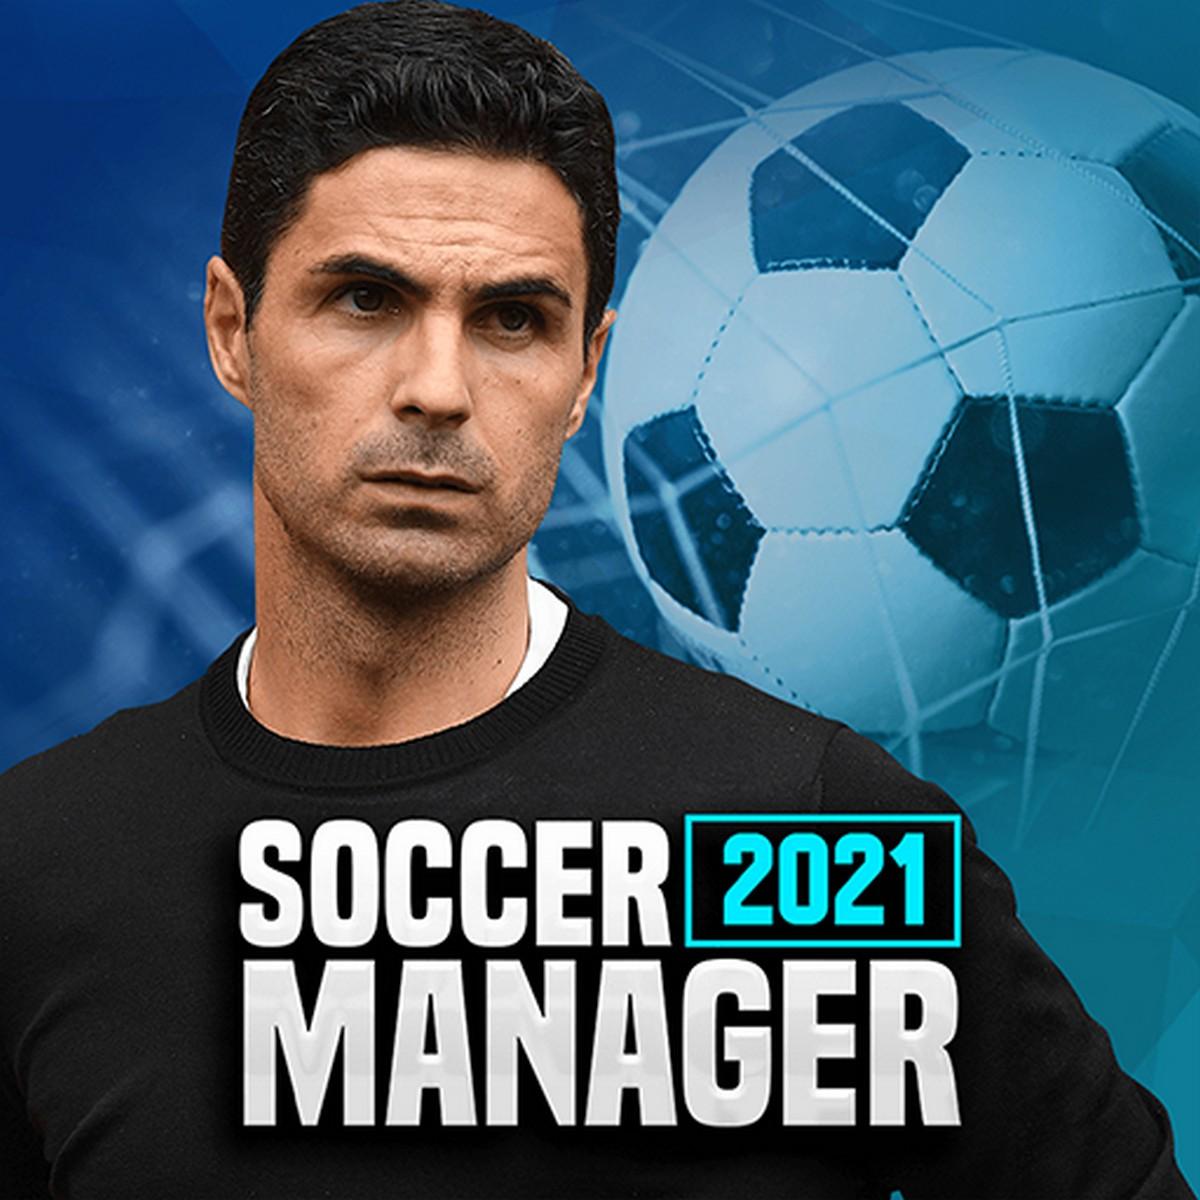 Soccer Manager 2021 APK MOD